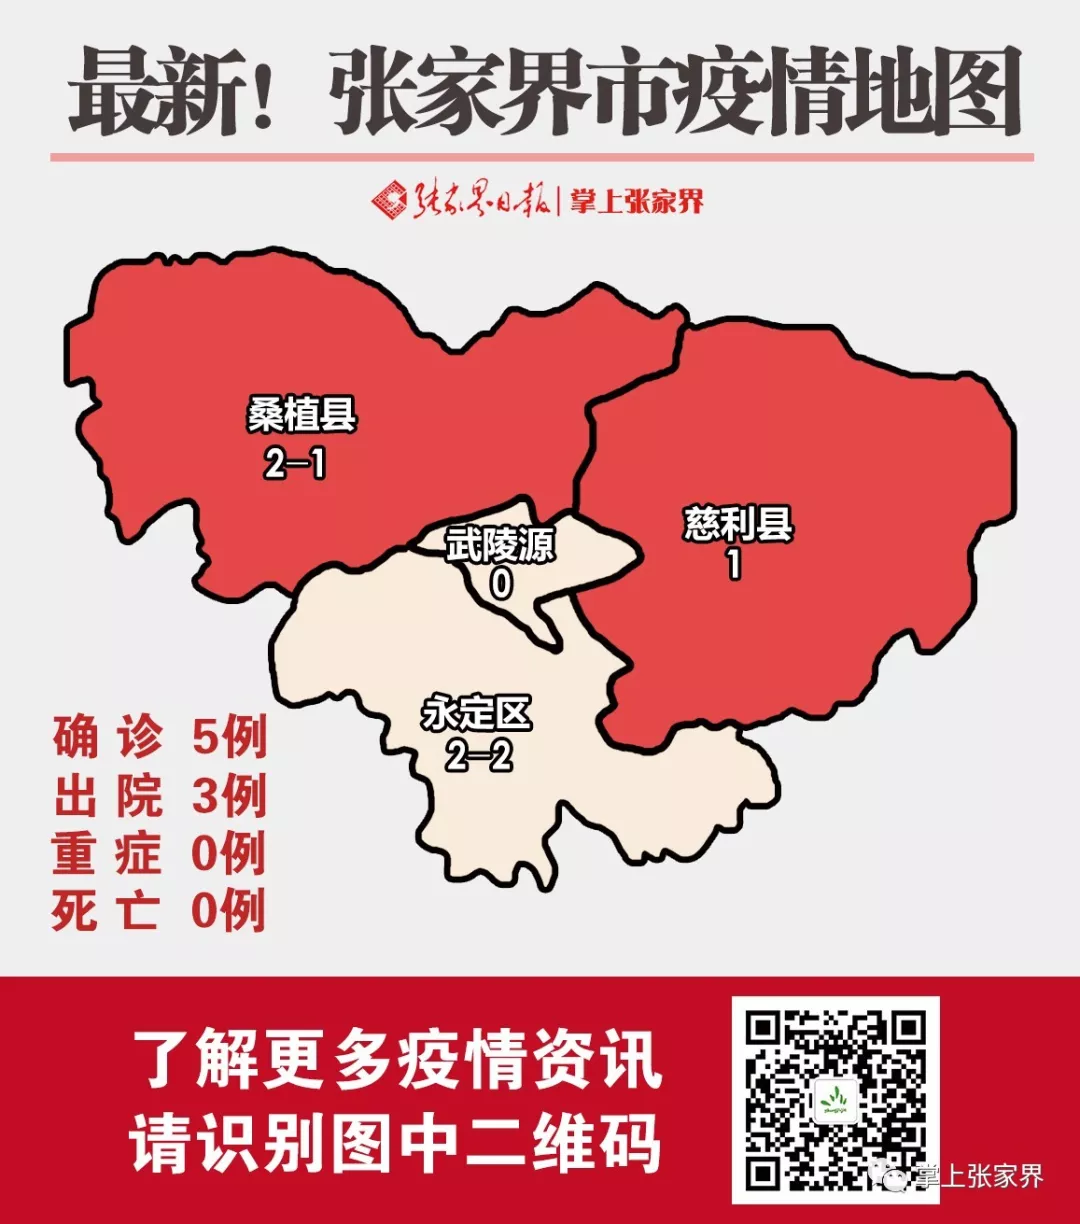 【权威发布】湖南2月12日新增确诊病例22例,张家界没有新增病例